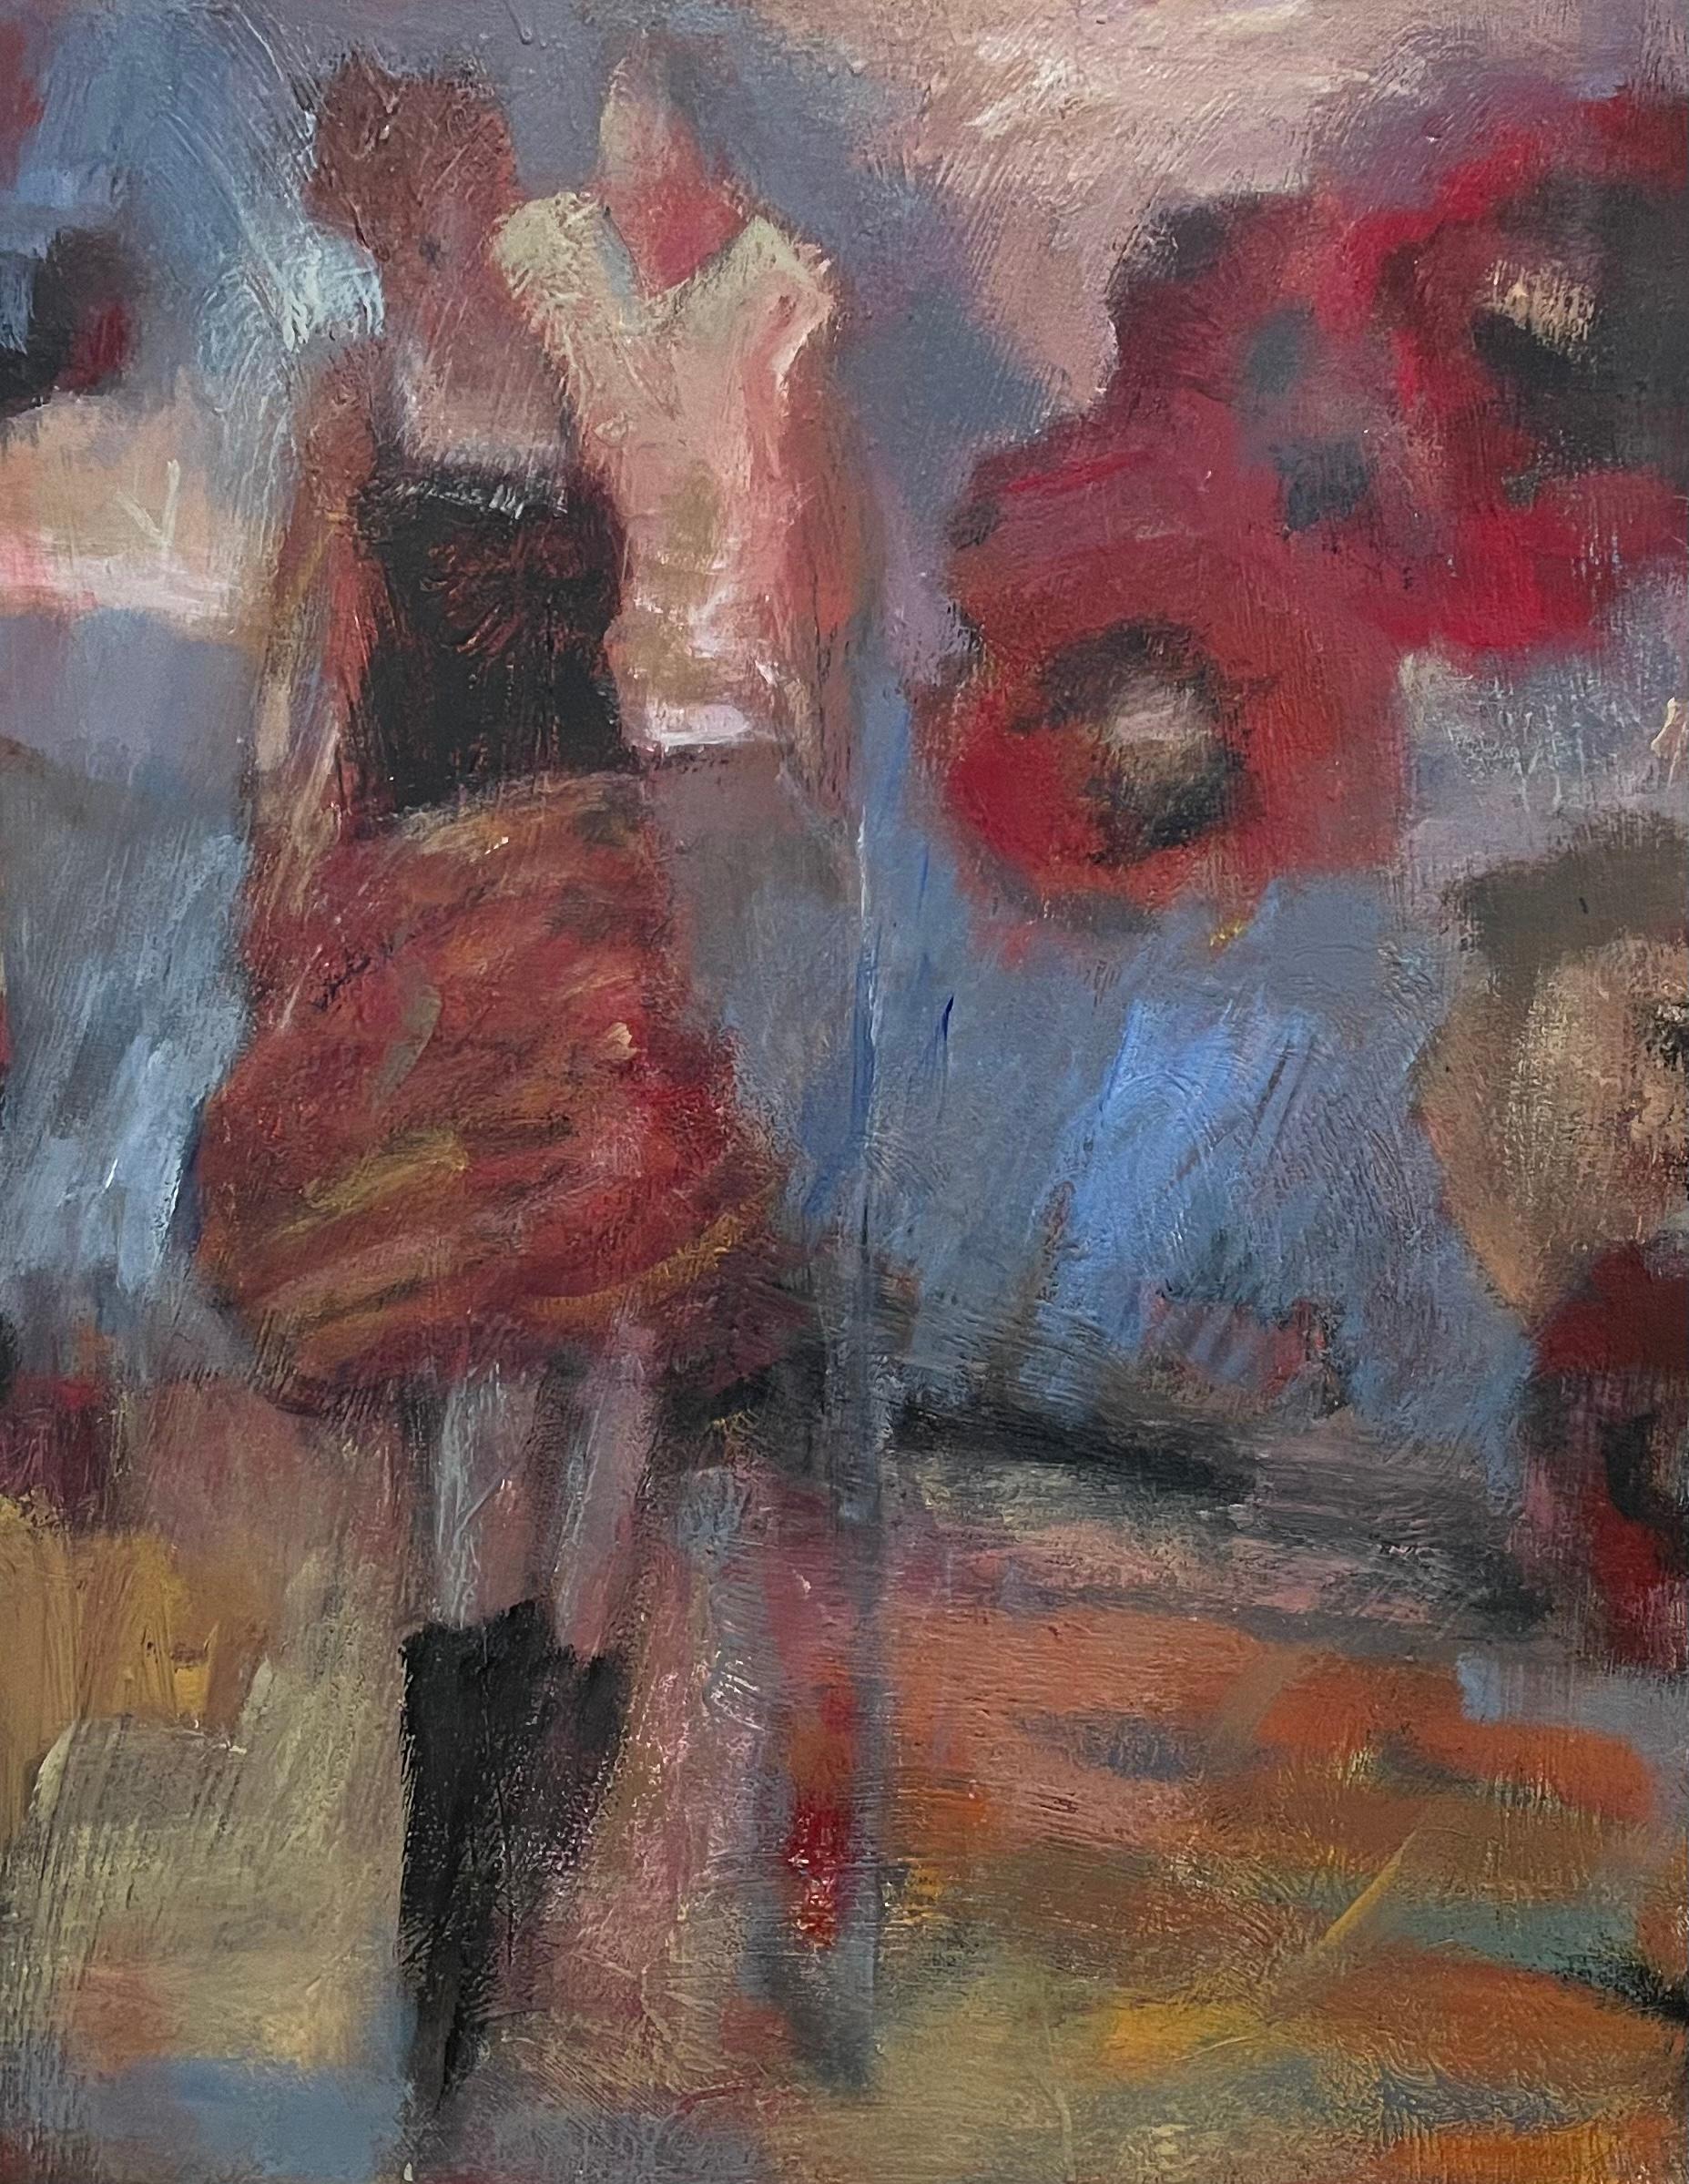 "Woman in Red" ist ein mitreißendes Werk von Helen Steele im Format 30" x 24" in Mischtechnik, das in das Herz des zeitgenössischen Expressionismus eindringt. Steeles Leinwand ist ein Wirbelsturm der Emotionen, artikuliert durch kühne Pinselstriche